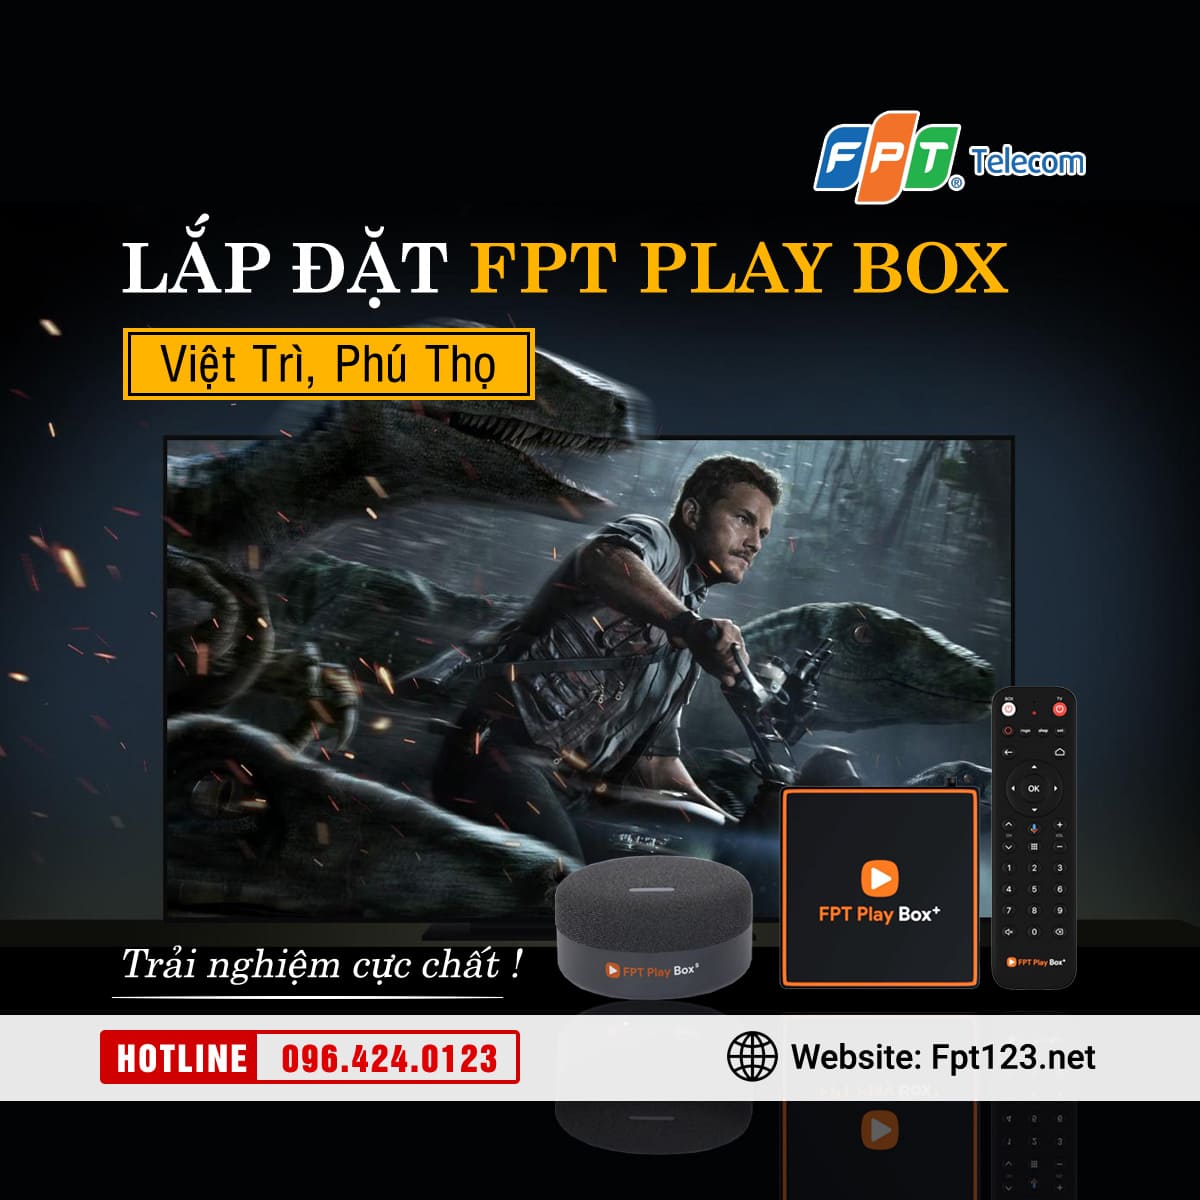 Lắp đặt FPT Play Box tại Việt Trì, Phú Thọ